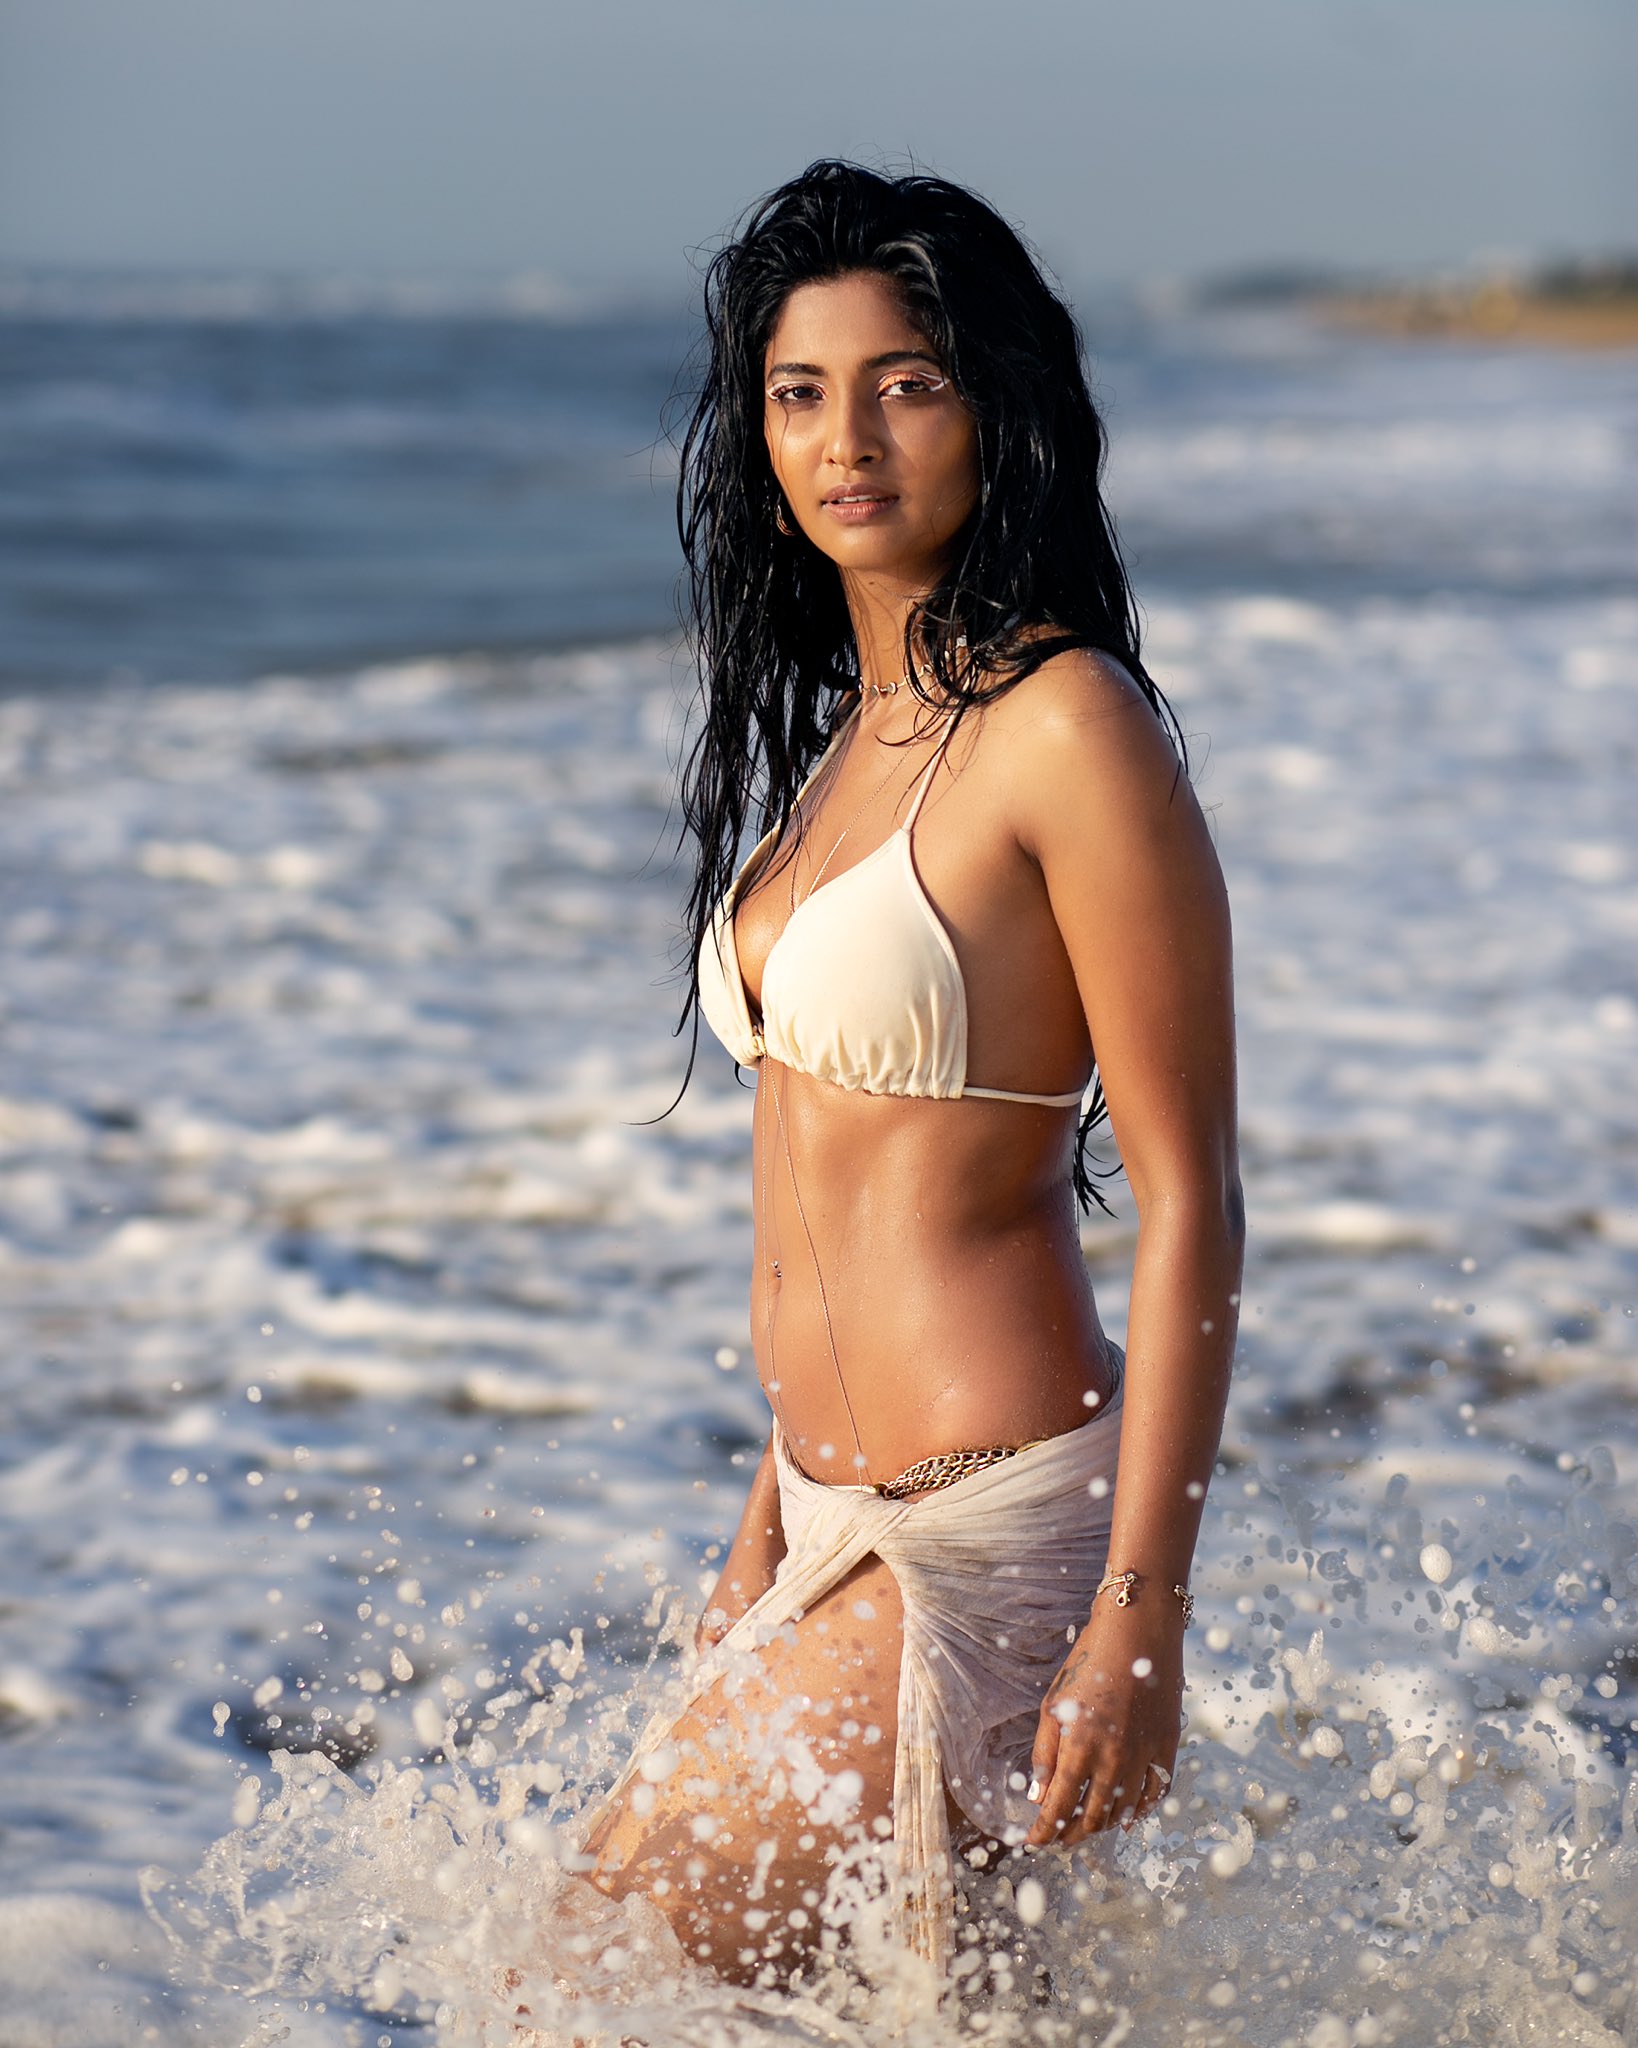 Keerthi Pandian Hot Beach Pictures , Keerthi Pandian wet bikini, Keerthi Pandian nip, Keerthi Pandian  boobs, Keerthi Pandian wet body